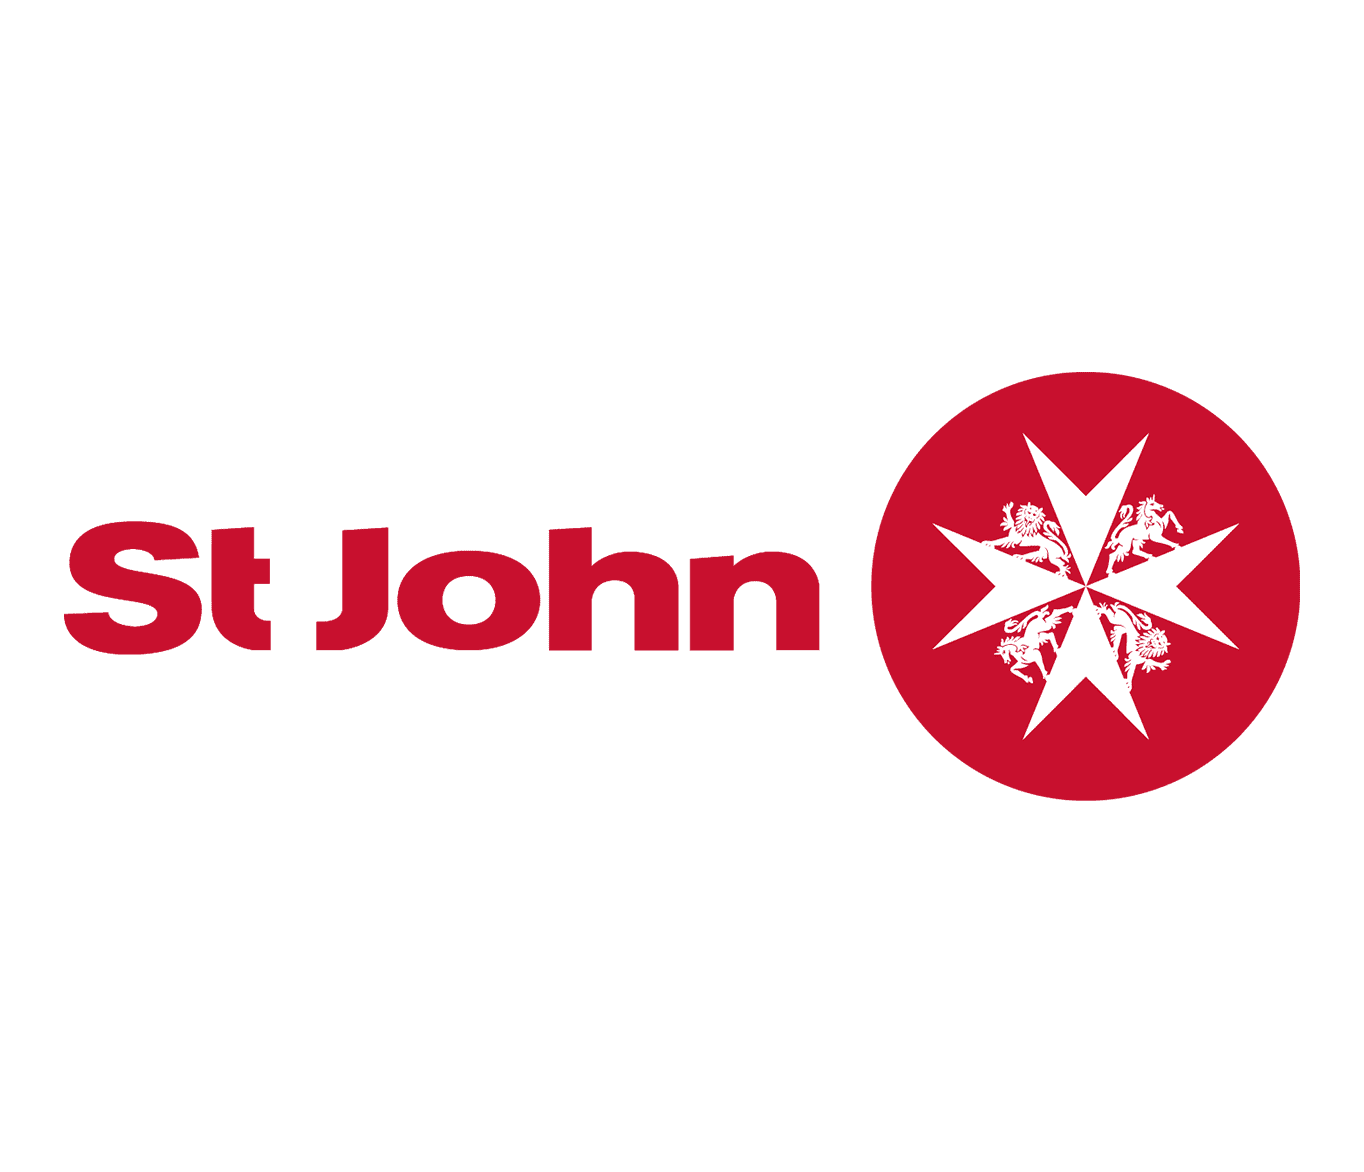 St John Ambulance Service